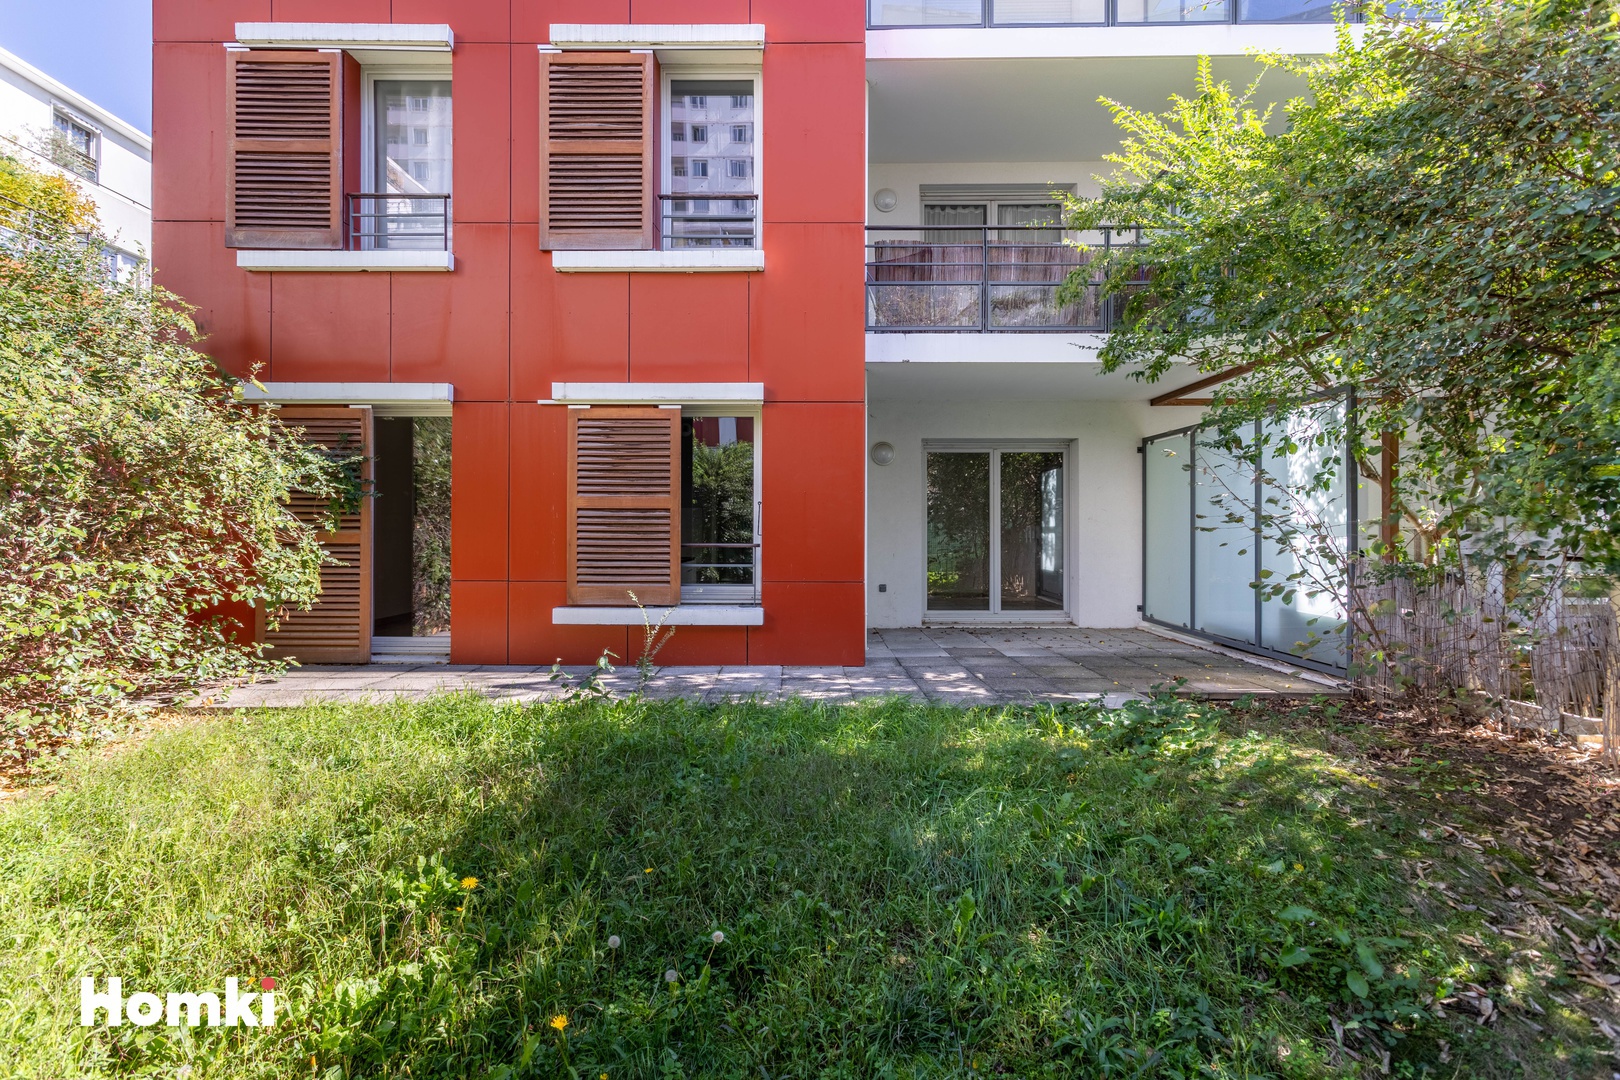 Homki - Vente Appartement  de 49.0 m² à Lyon 69008